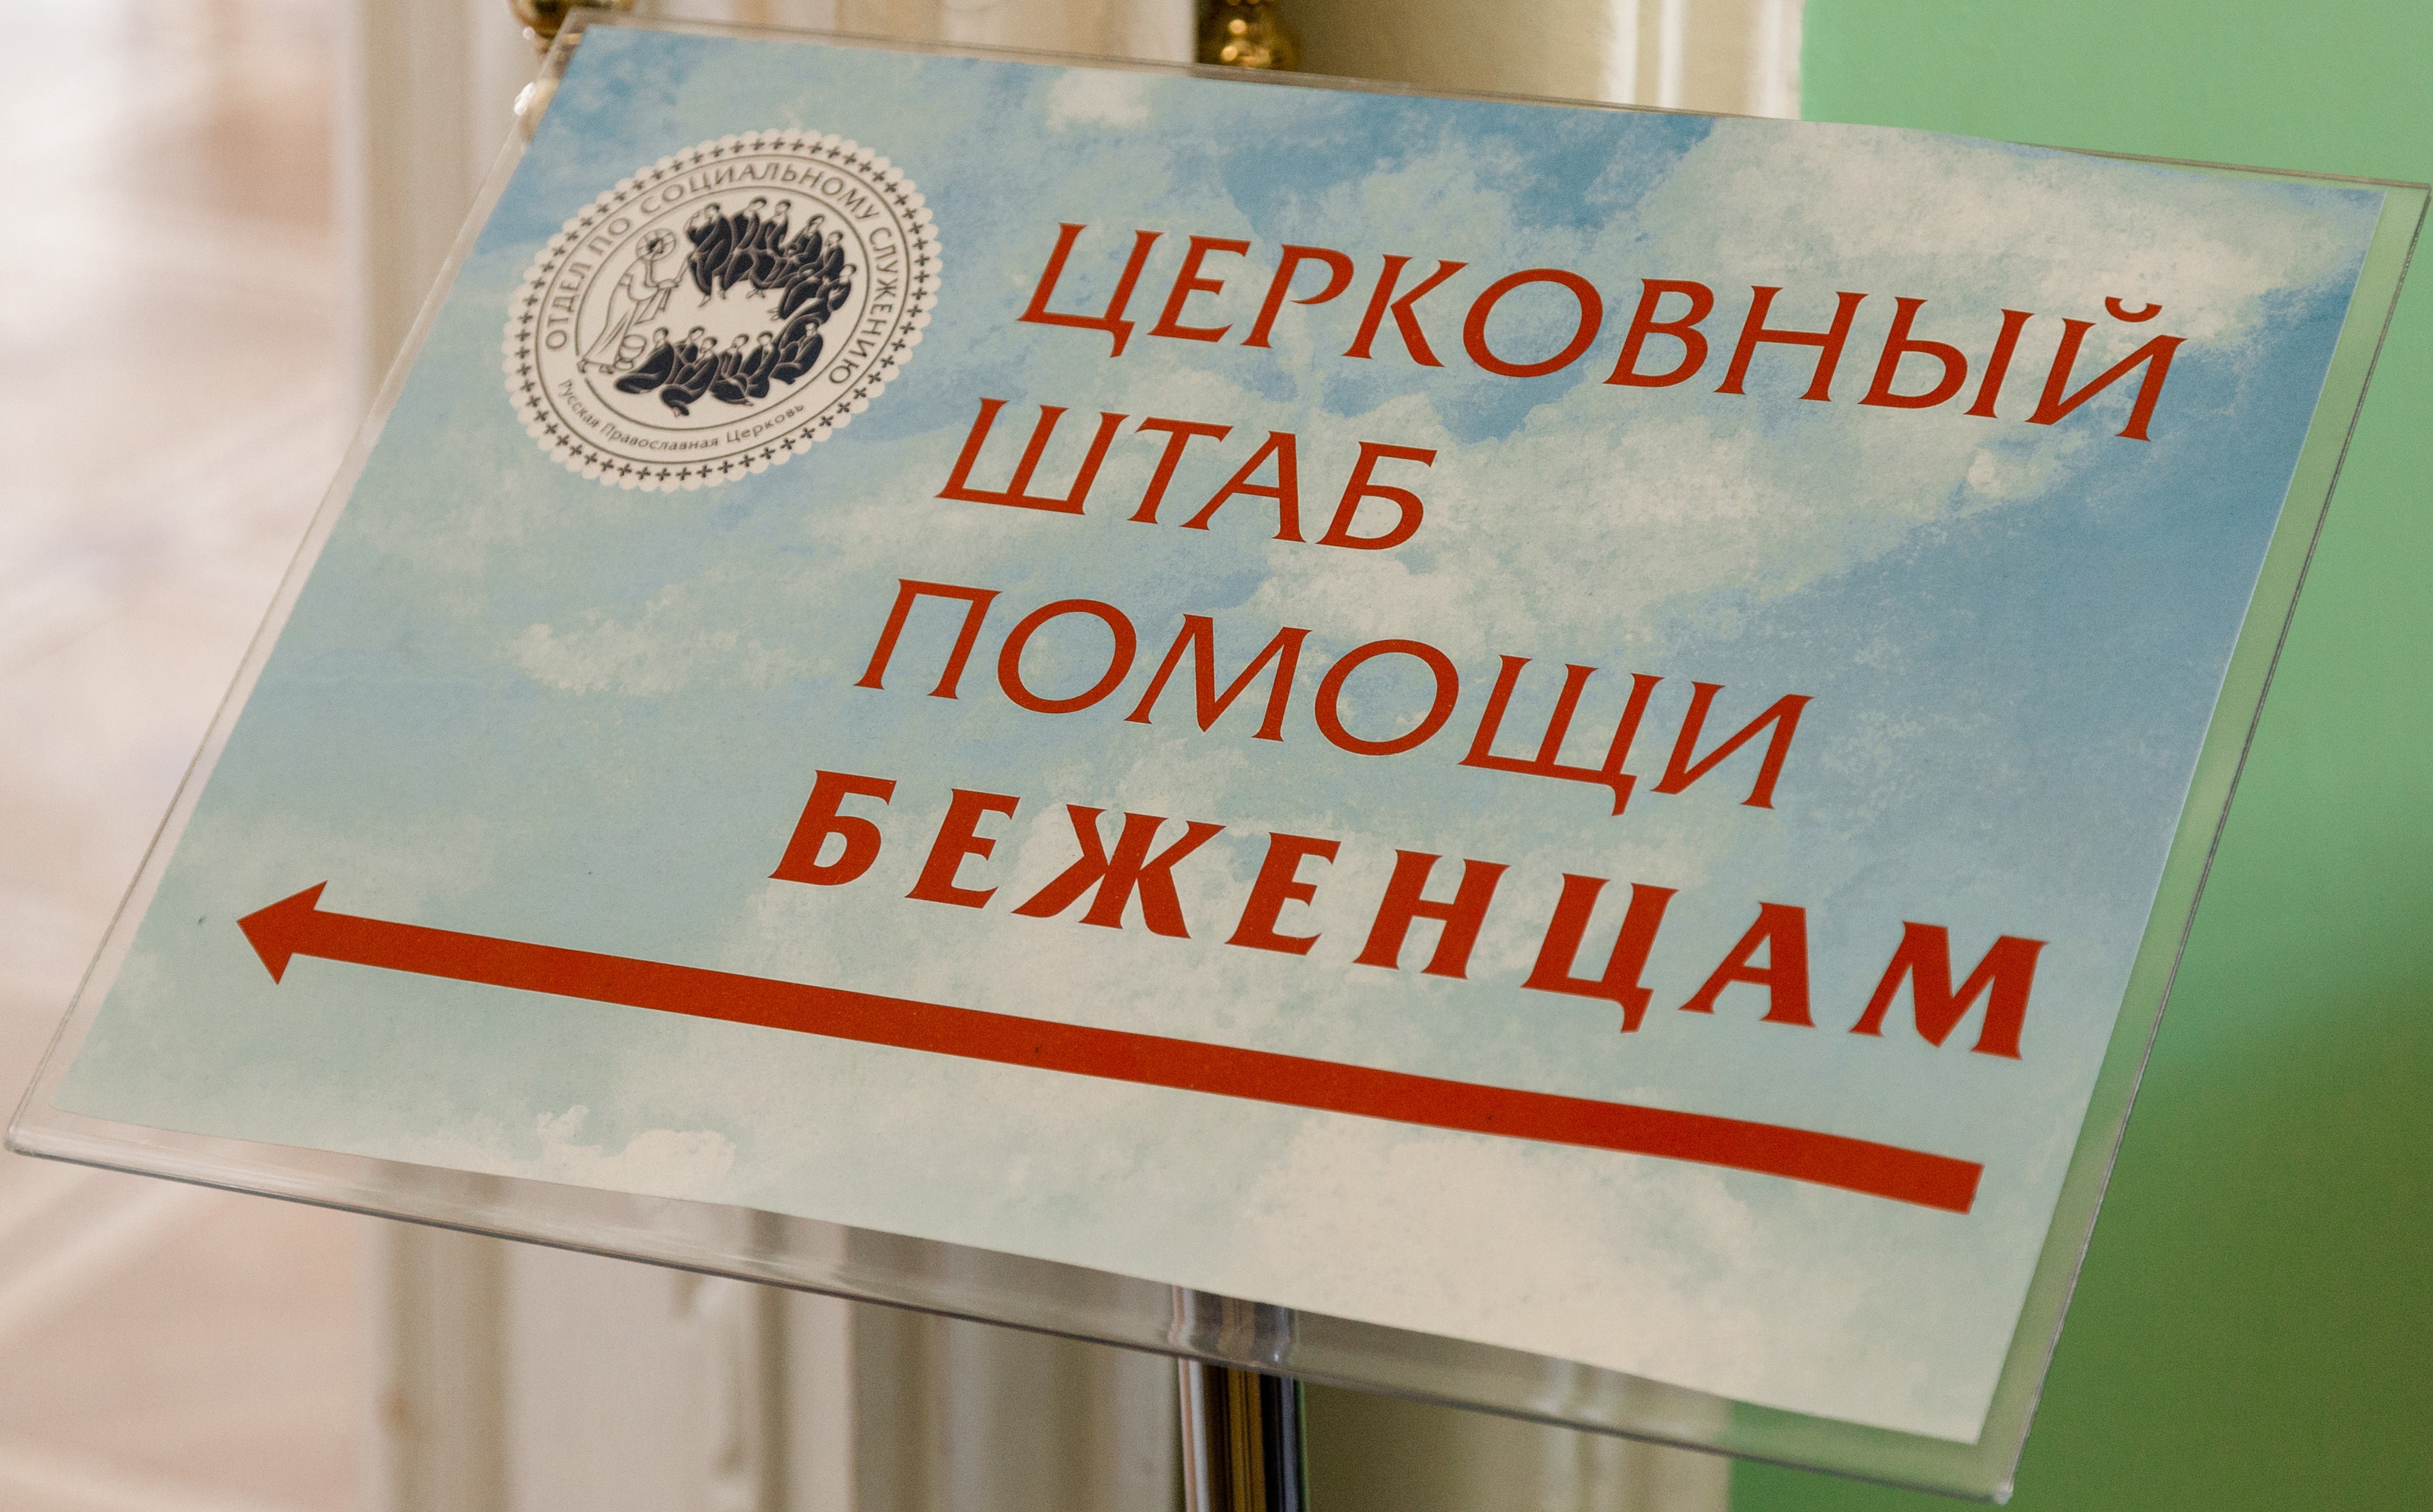 Церковный штаб помощи беженцам в Москве открыт ежедневно